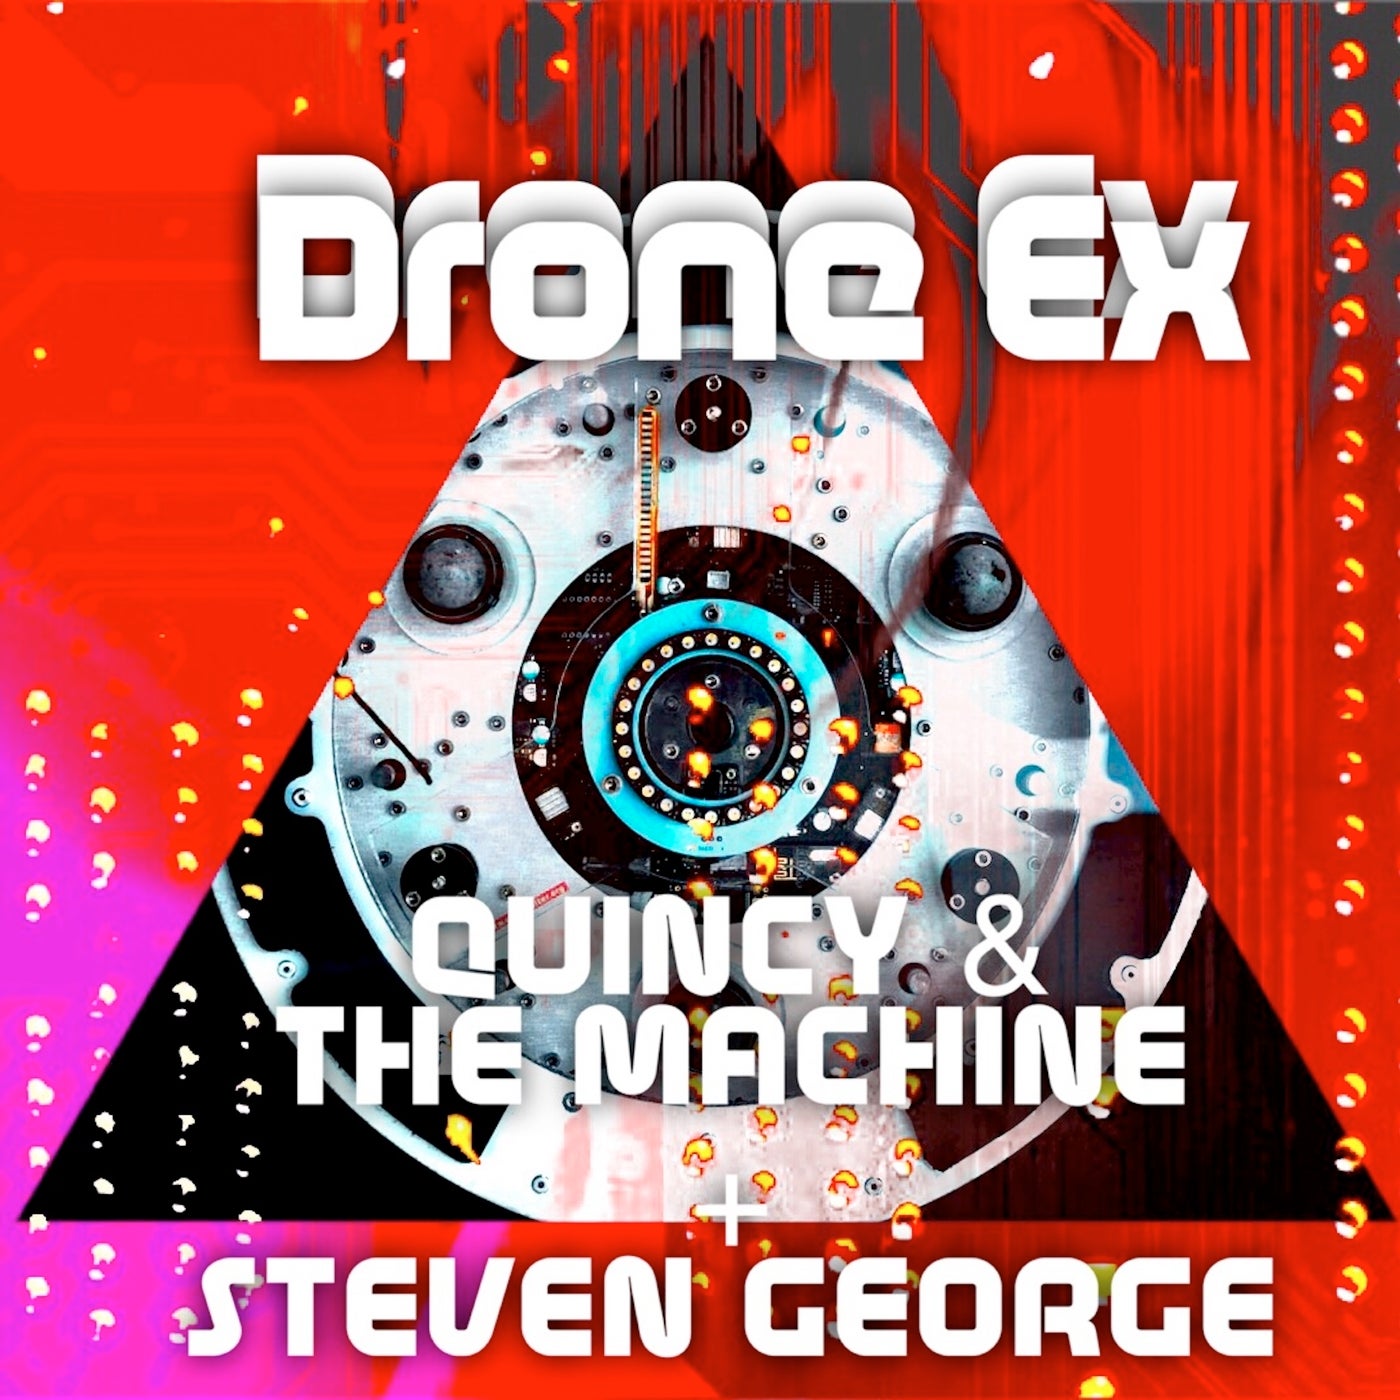 Drone Ex